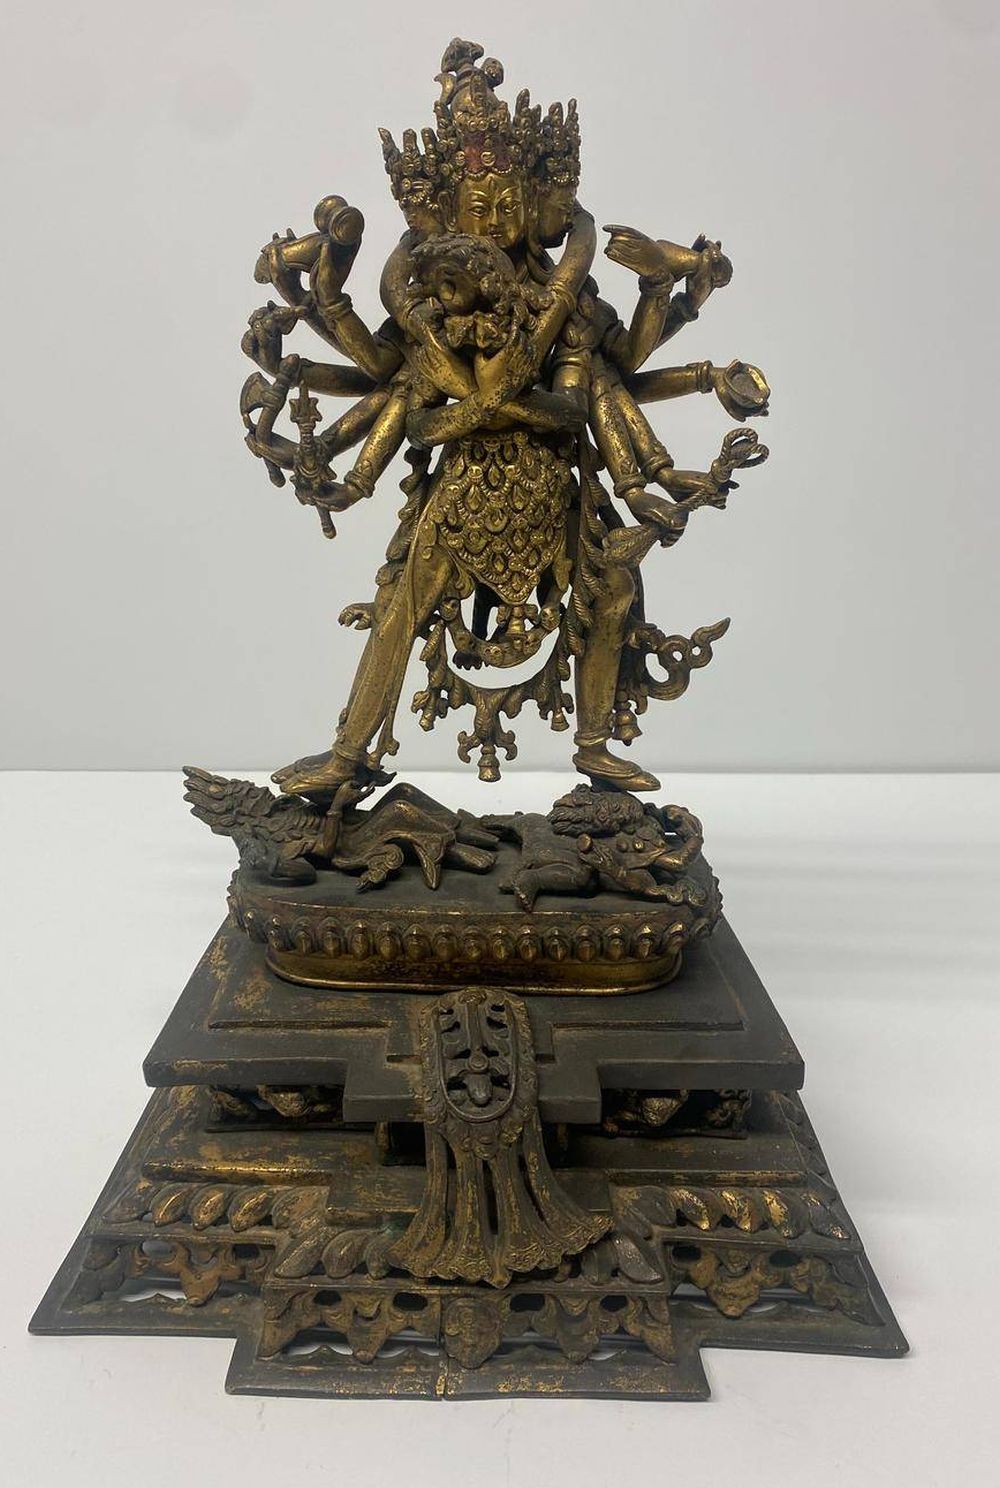 專家判斷該批文物大部分為明清時期我國藏傳佛教文物。 央視截圖